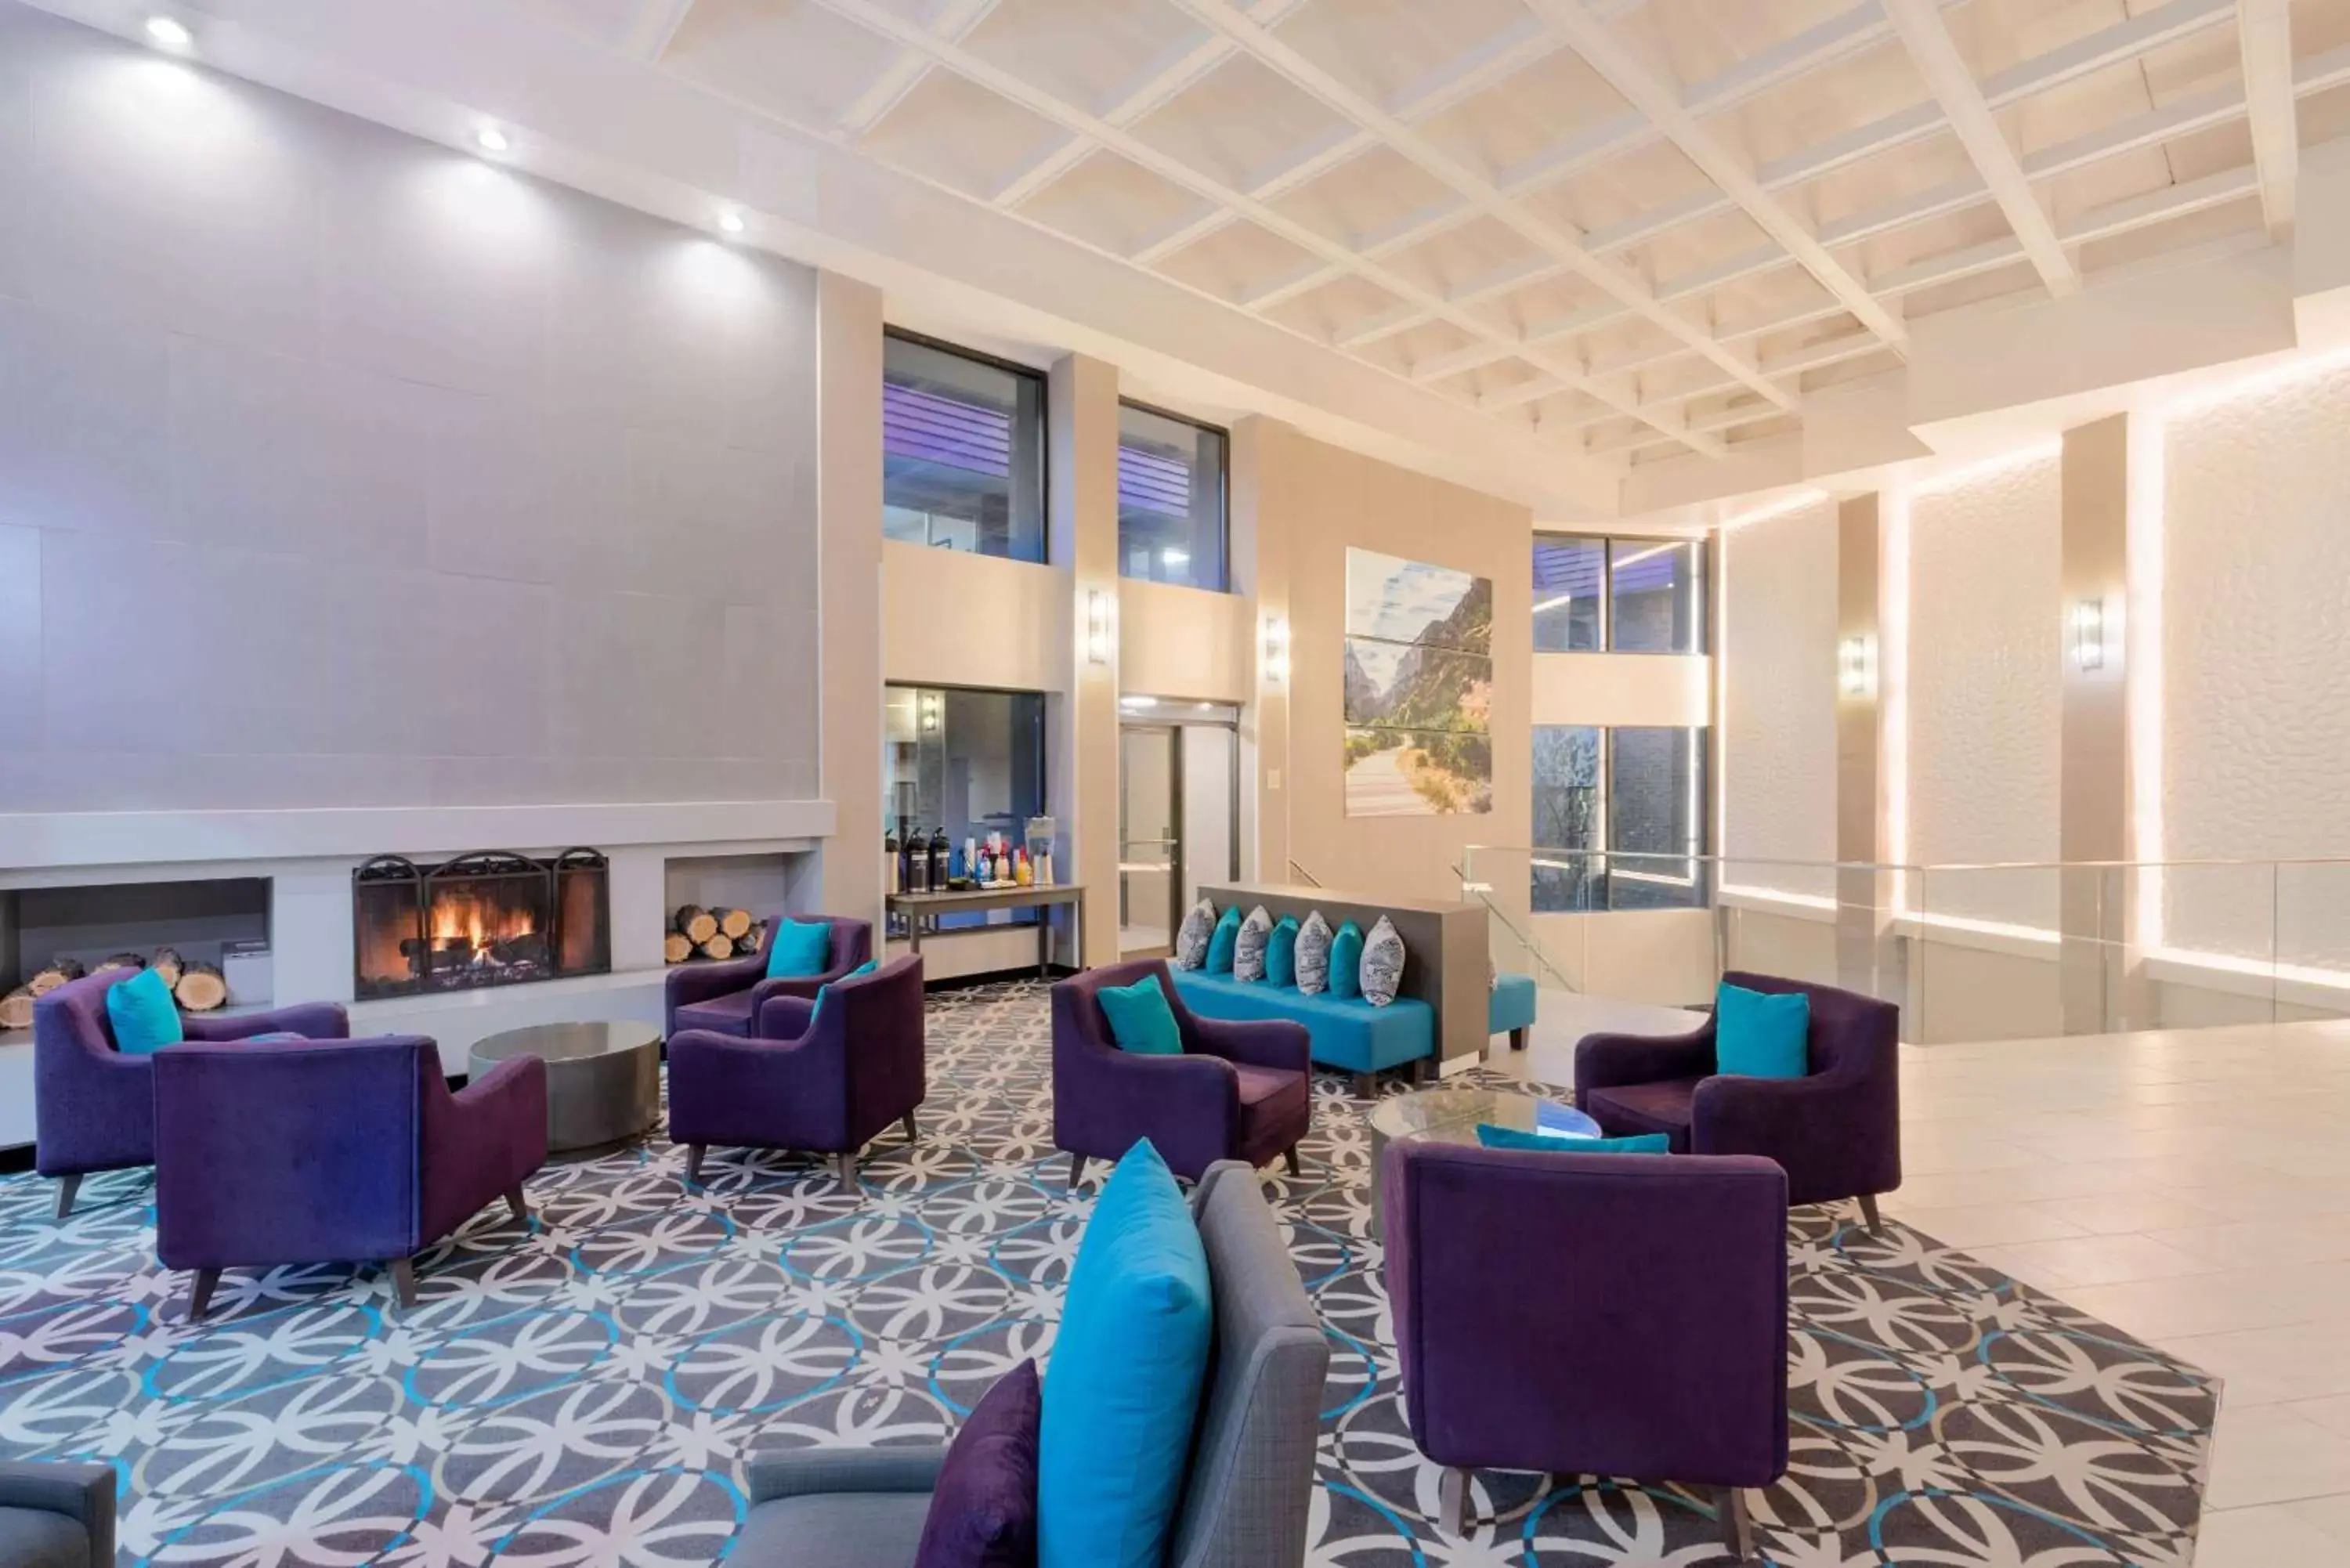 Lobby or reception in La Quinta by Wyndham Glenwood Springs